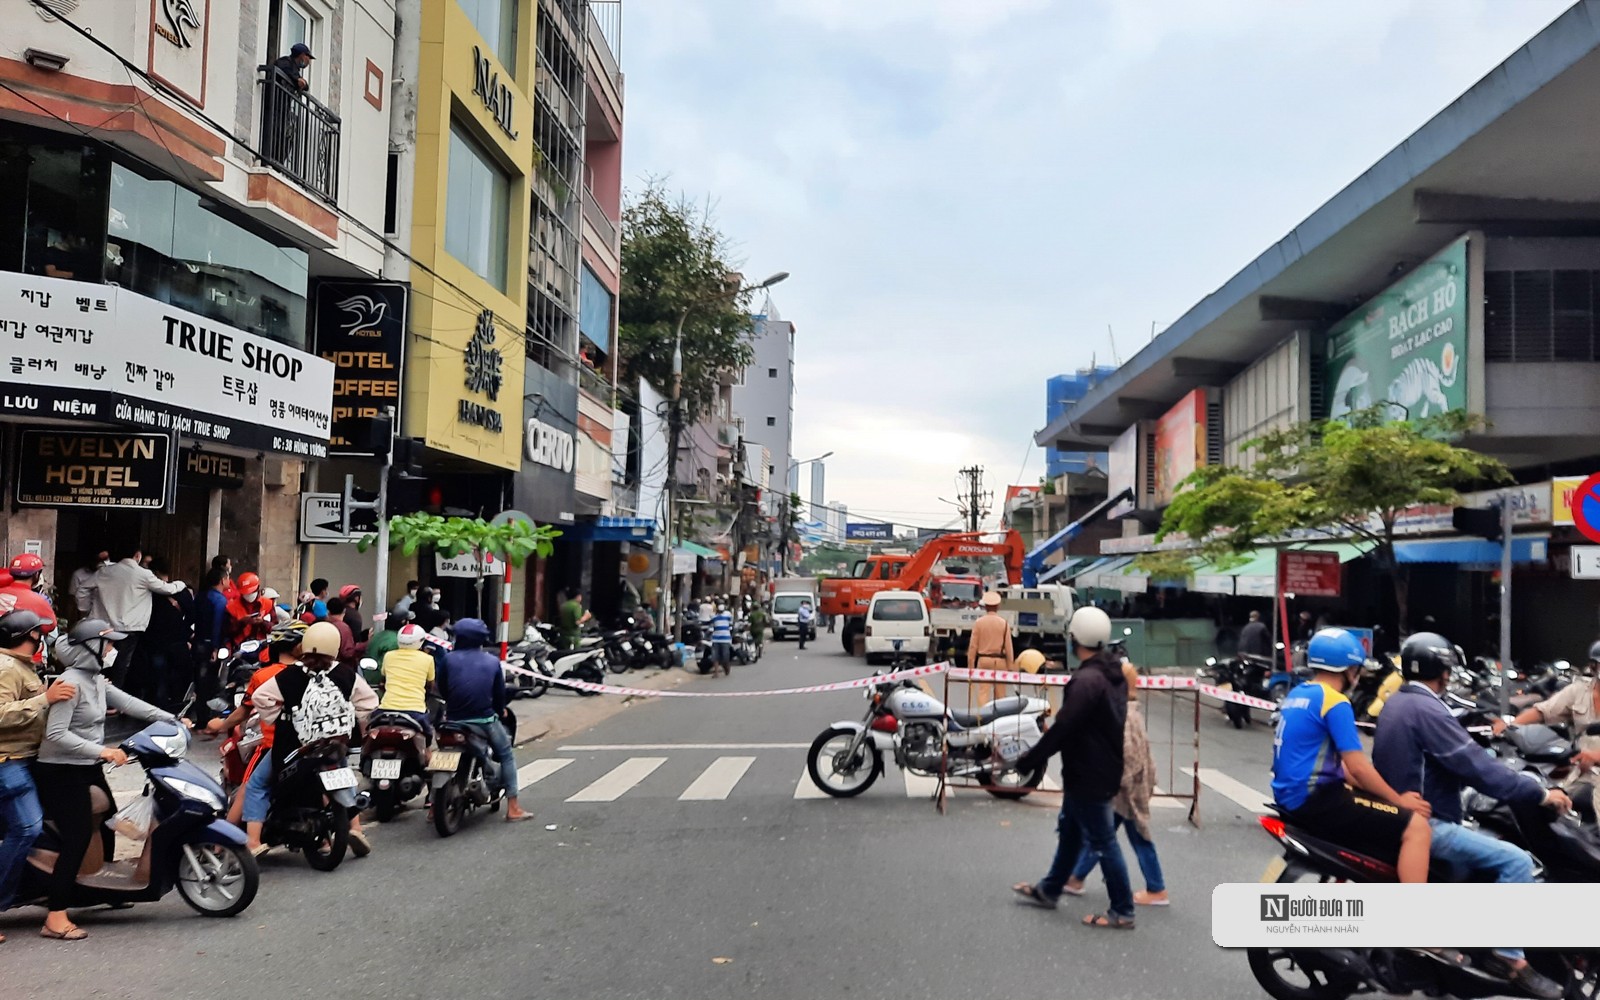 Phát hiện 1 phần thi thể người dưới cống gần chợ Hàn tại Đà Nẵng